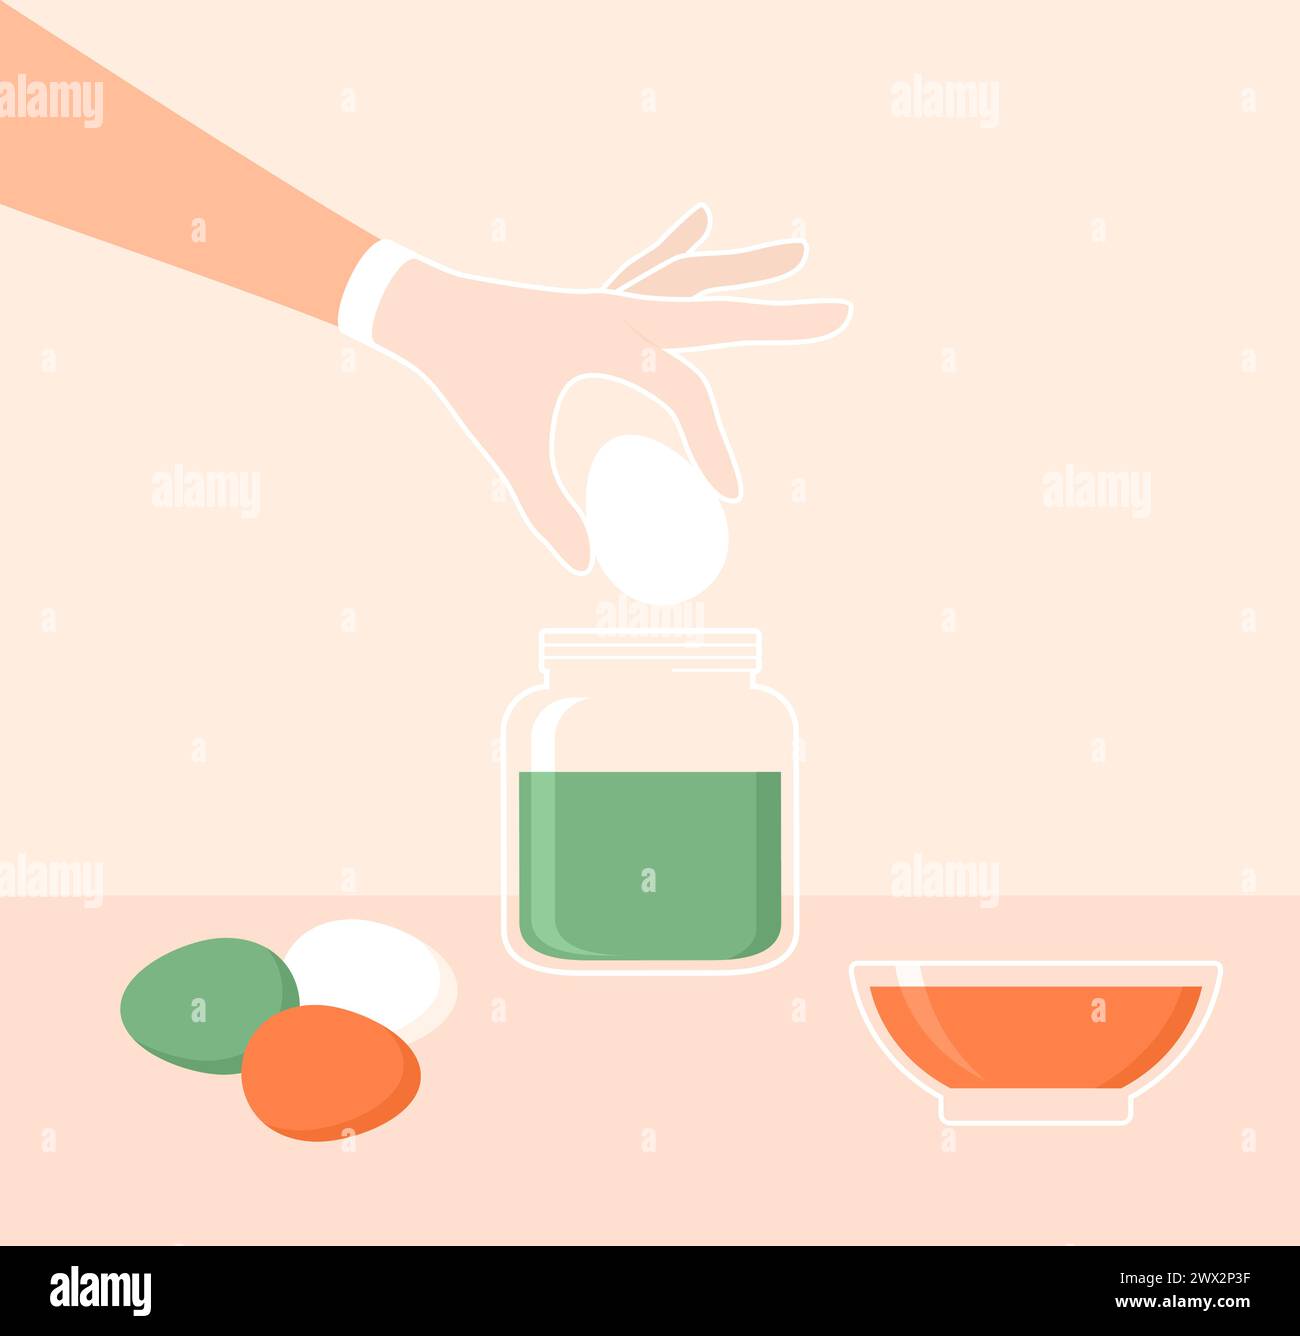 Eine Hand in einem Handschuh, die ein Ei in ein Glas mit Farbstoff legt. Ostereier färben. Illustration des flachen Vektors Stock Vektor